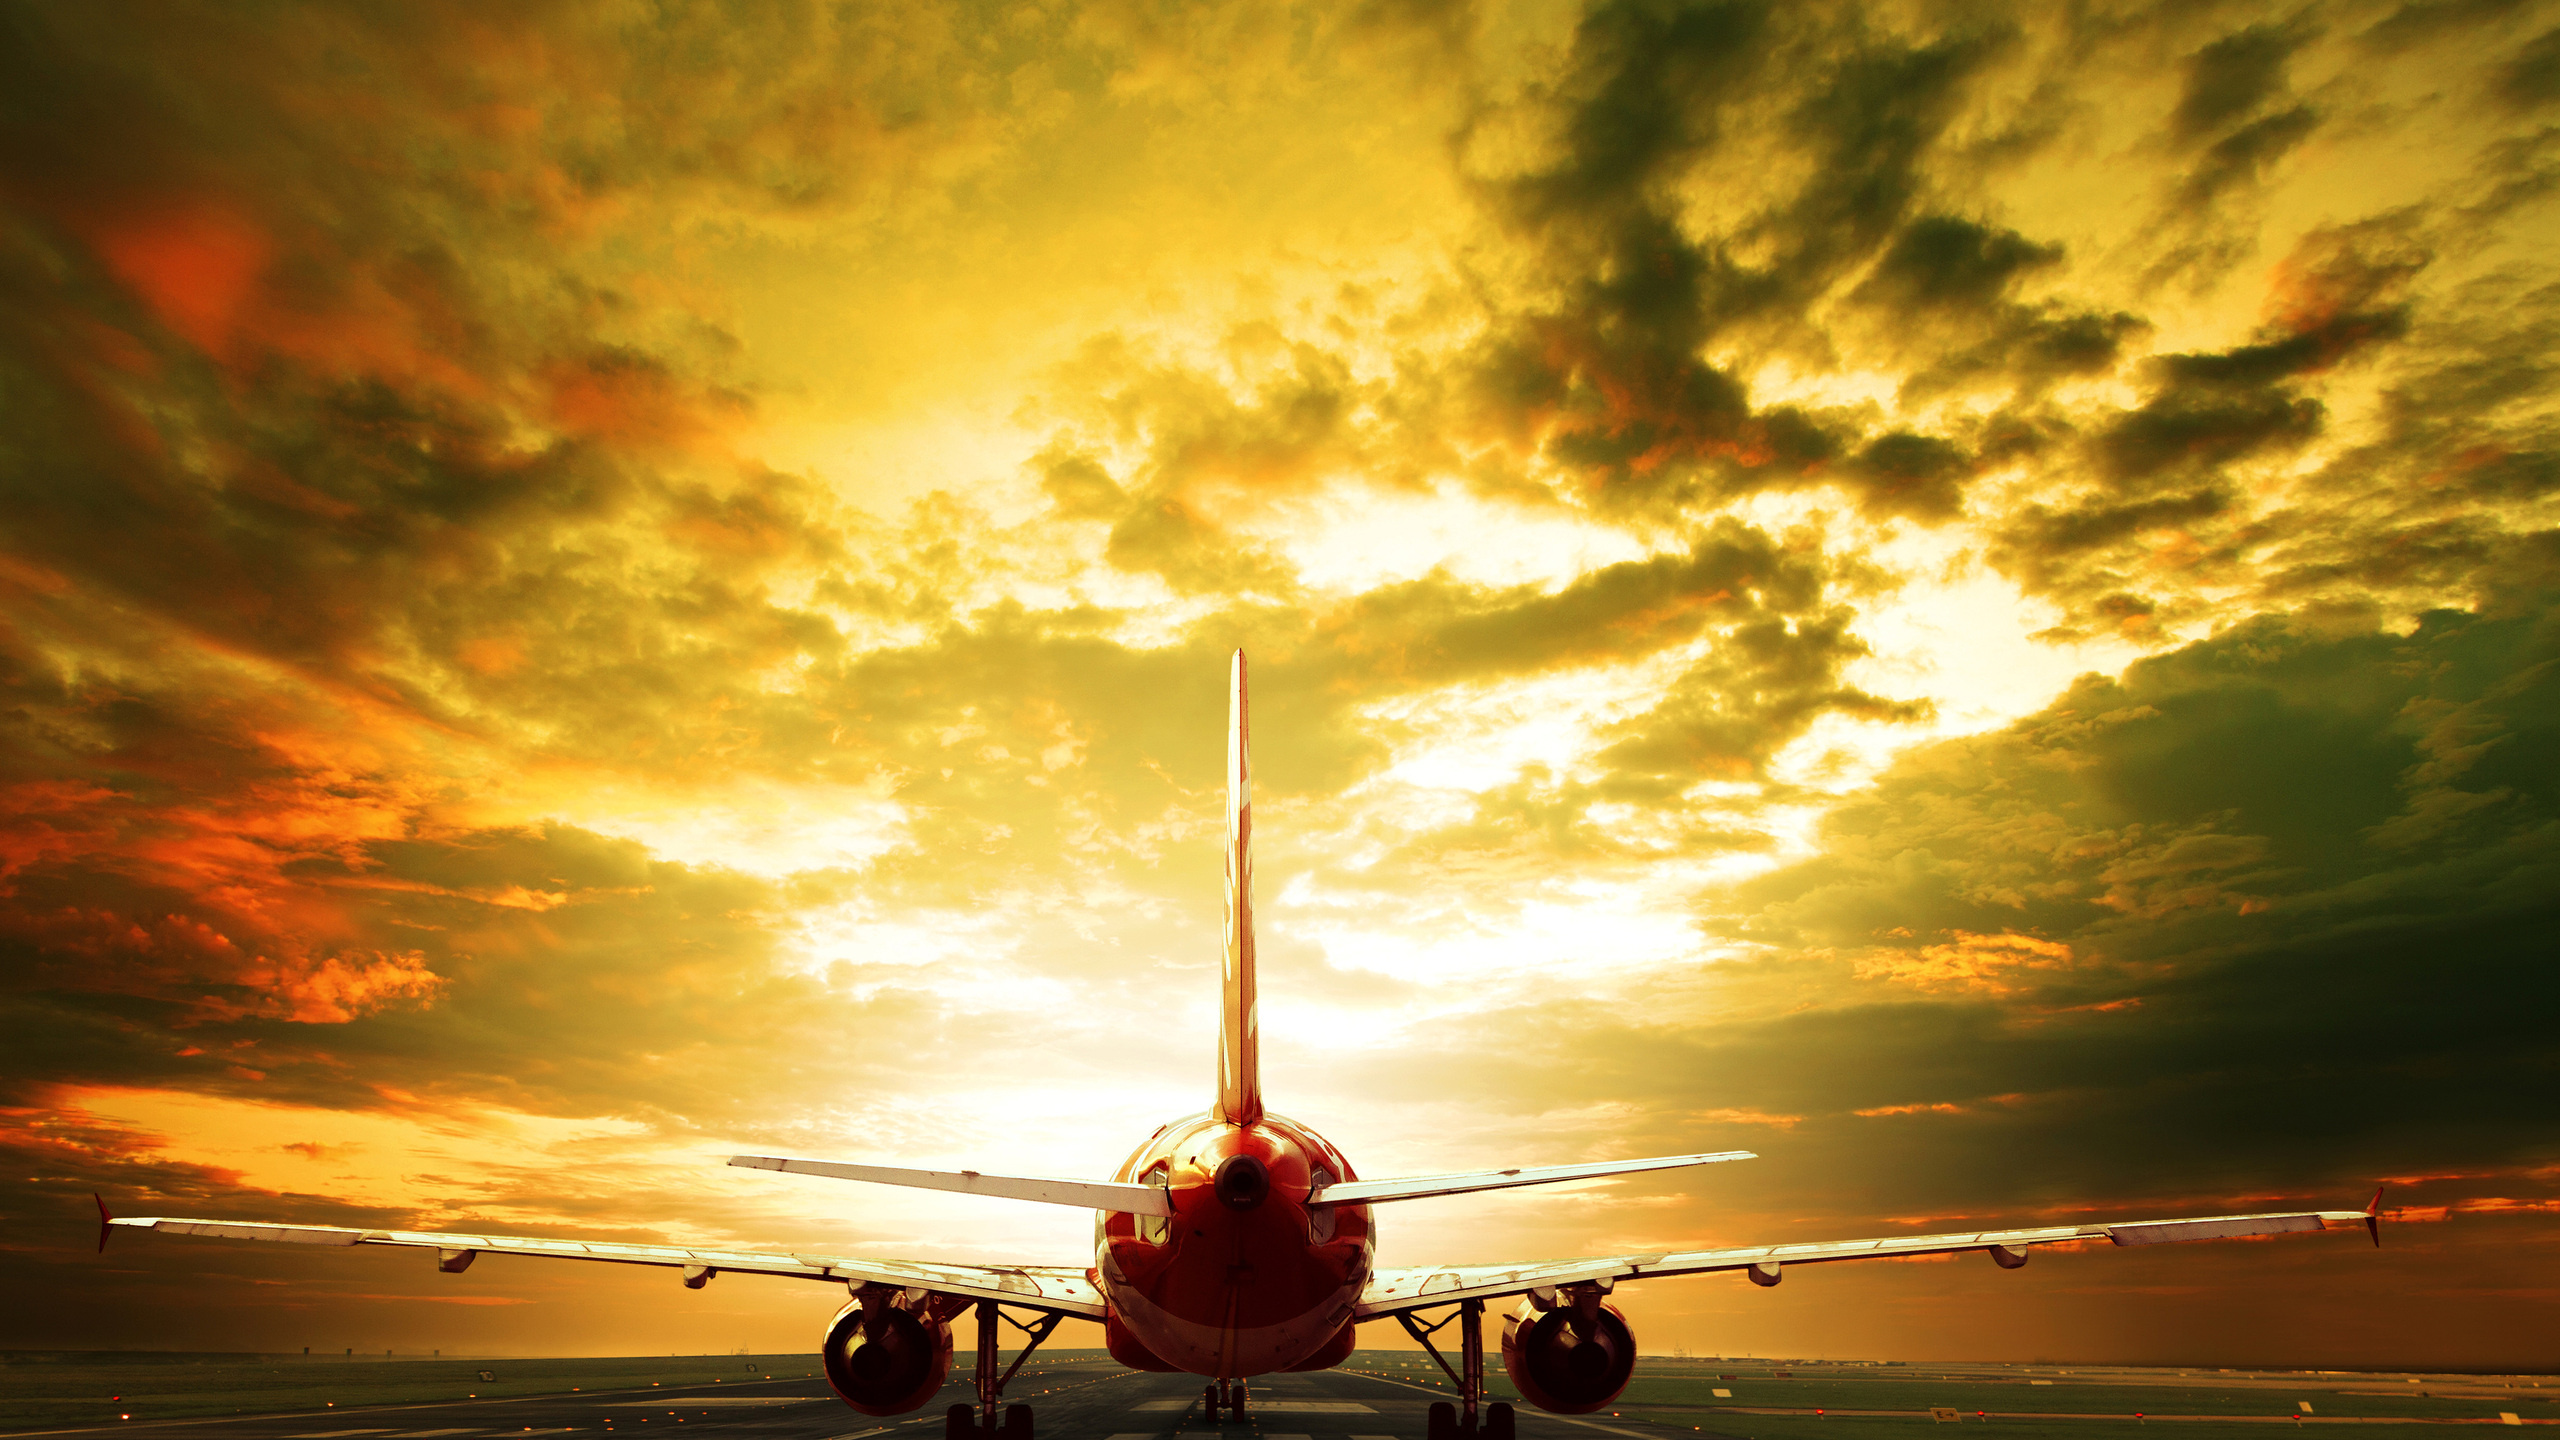 Airplane, Passenger airplane, 4K resolution, Stunning visuals, 2560x1440 HD Desktop